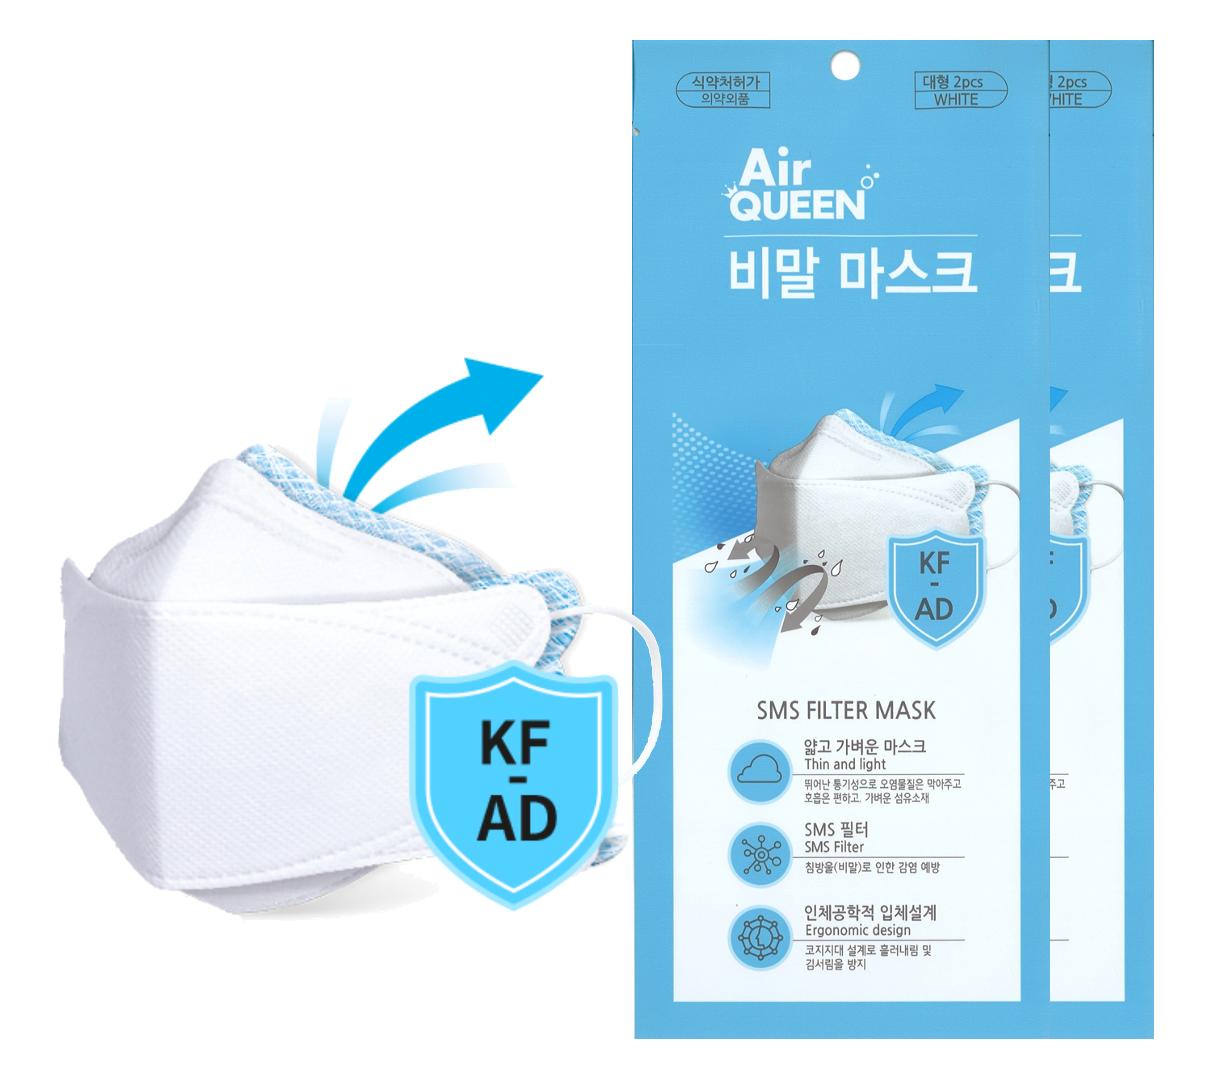 Air Queen KFAD Adult Mask (White) - Air Queen